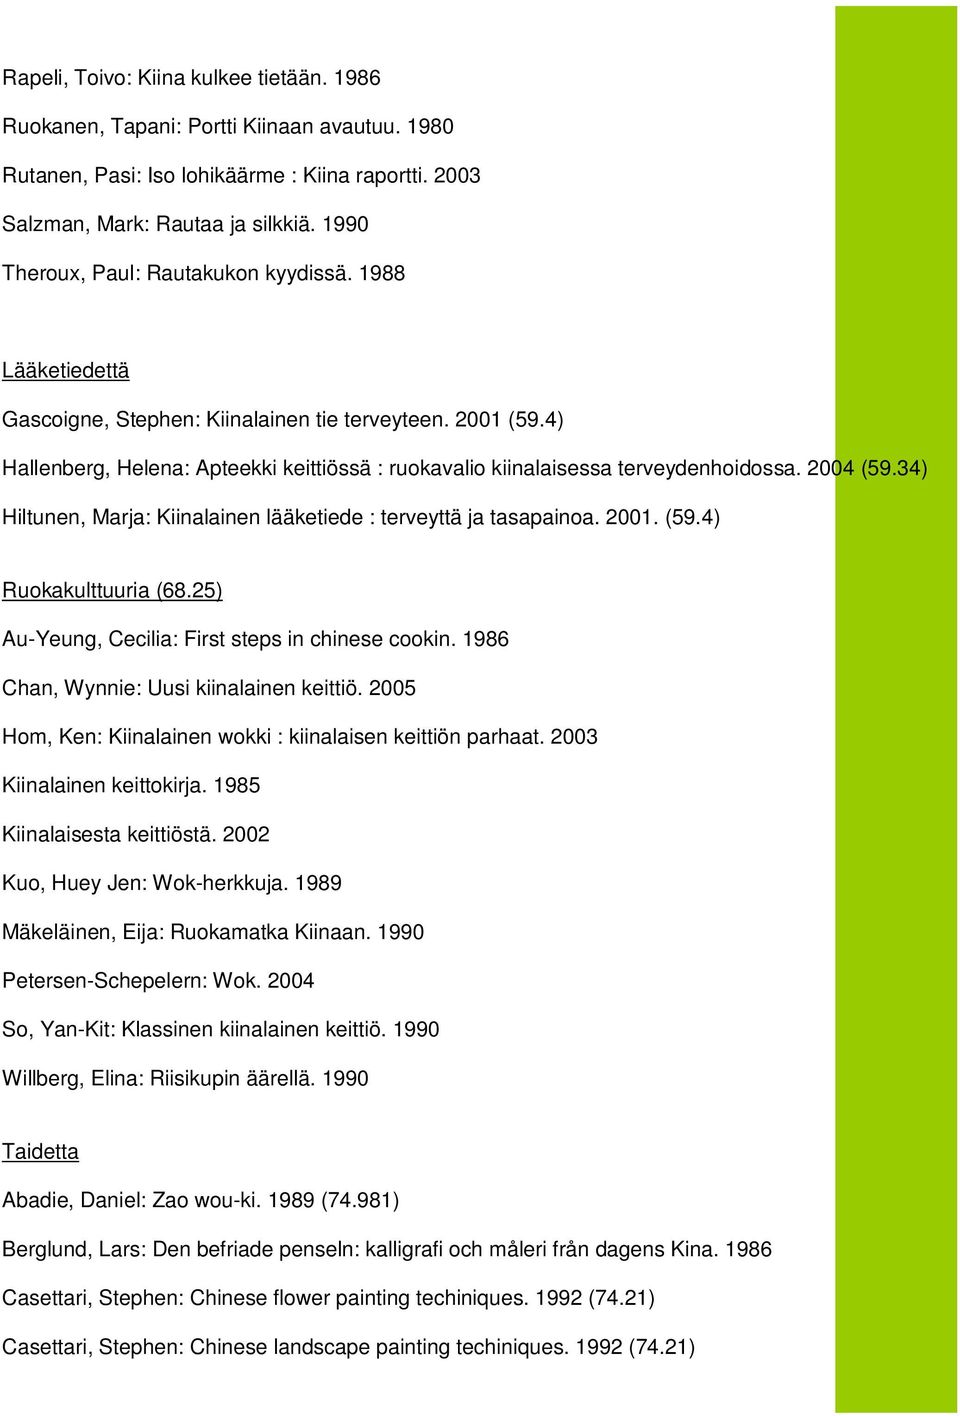 4) Hallenberg, Helena: Apteekki keittiössä : ruokavalio kiinalaisessa terveydenhoidossa. 2004 (59.34) Hiltunen, Marja: Kiinalainen lääketiede : terveyttä ja tasapainoa. 2001. (59.4) Ruokakulttuuria (68.